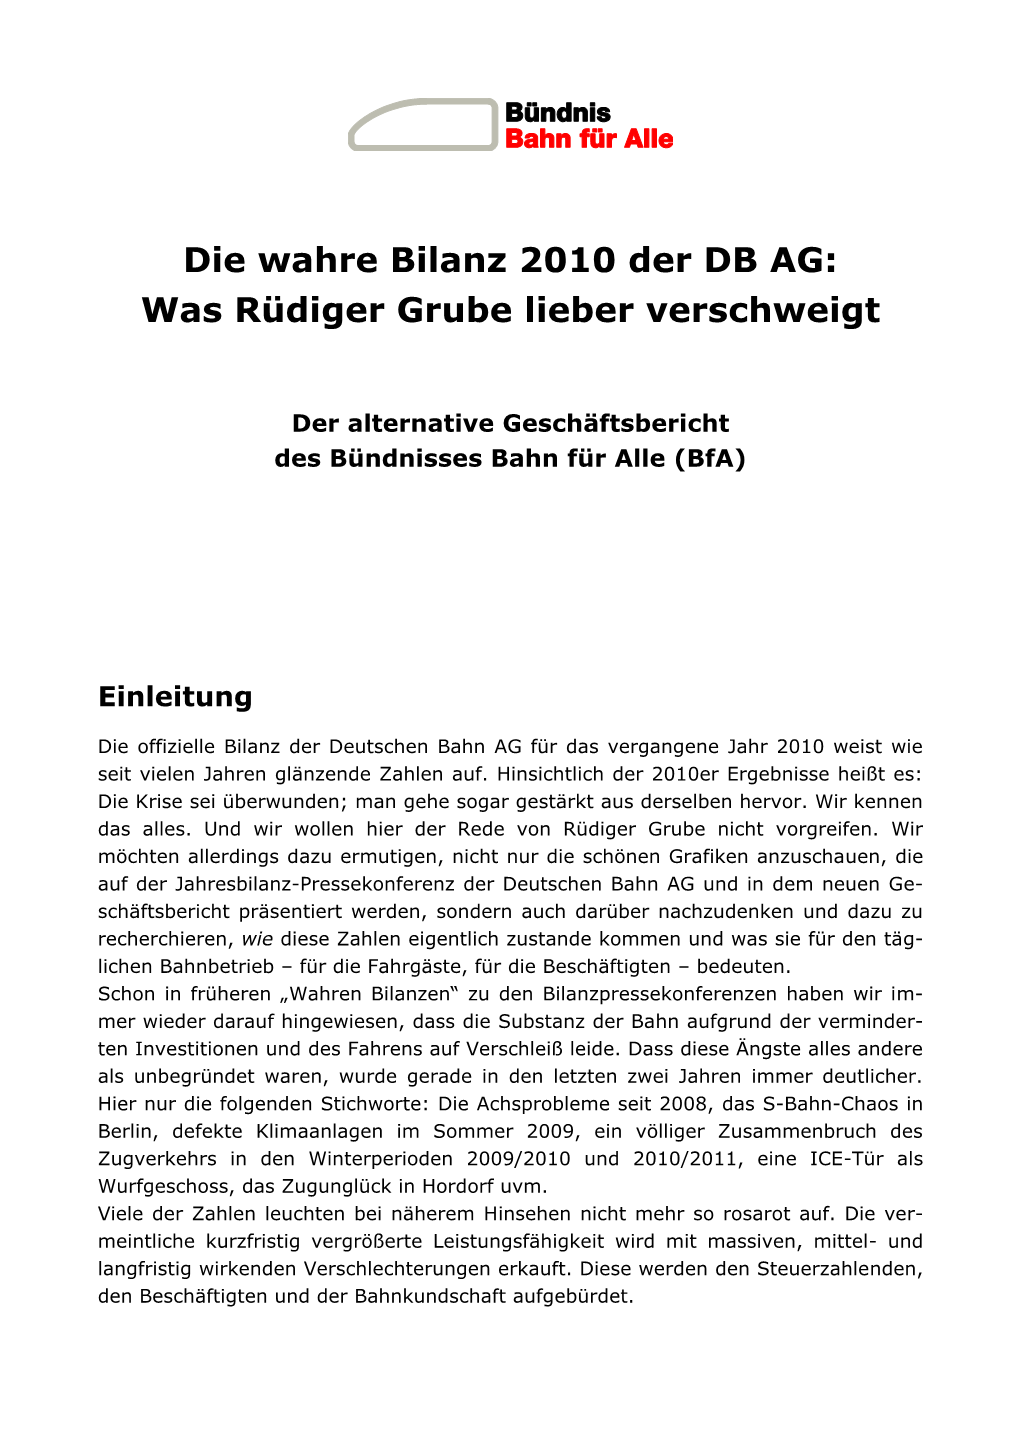 Die Wahre Bilanz 2010 Der DB AG: Was Rüdiger Grube Lieber